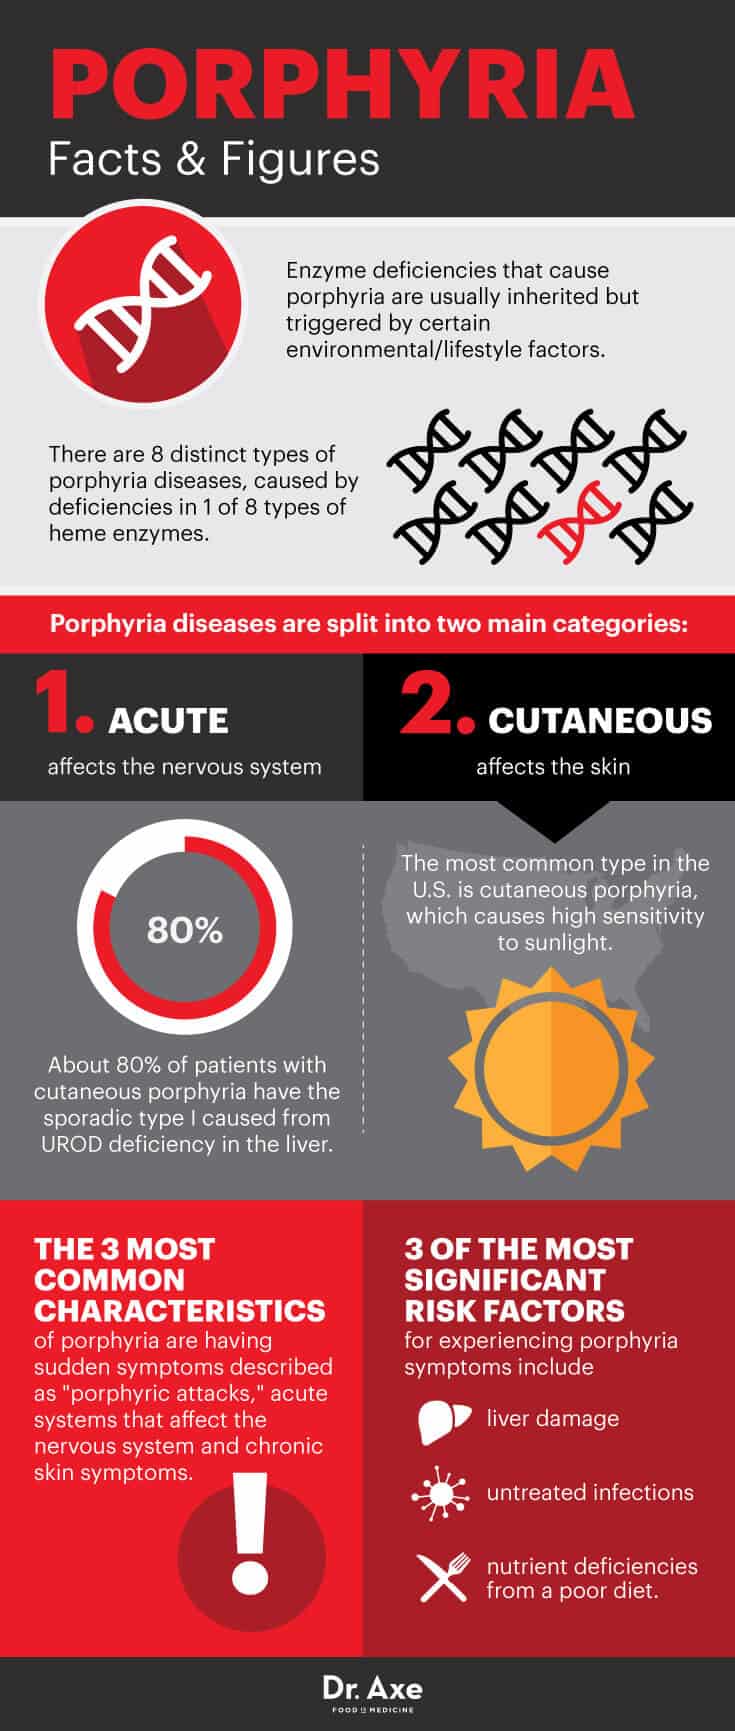 Porphyria facts - Dr. Axe